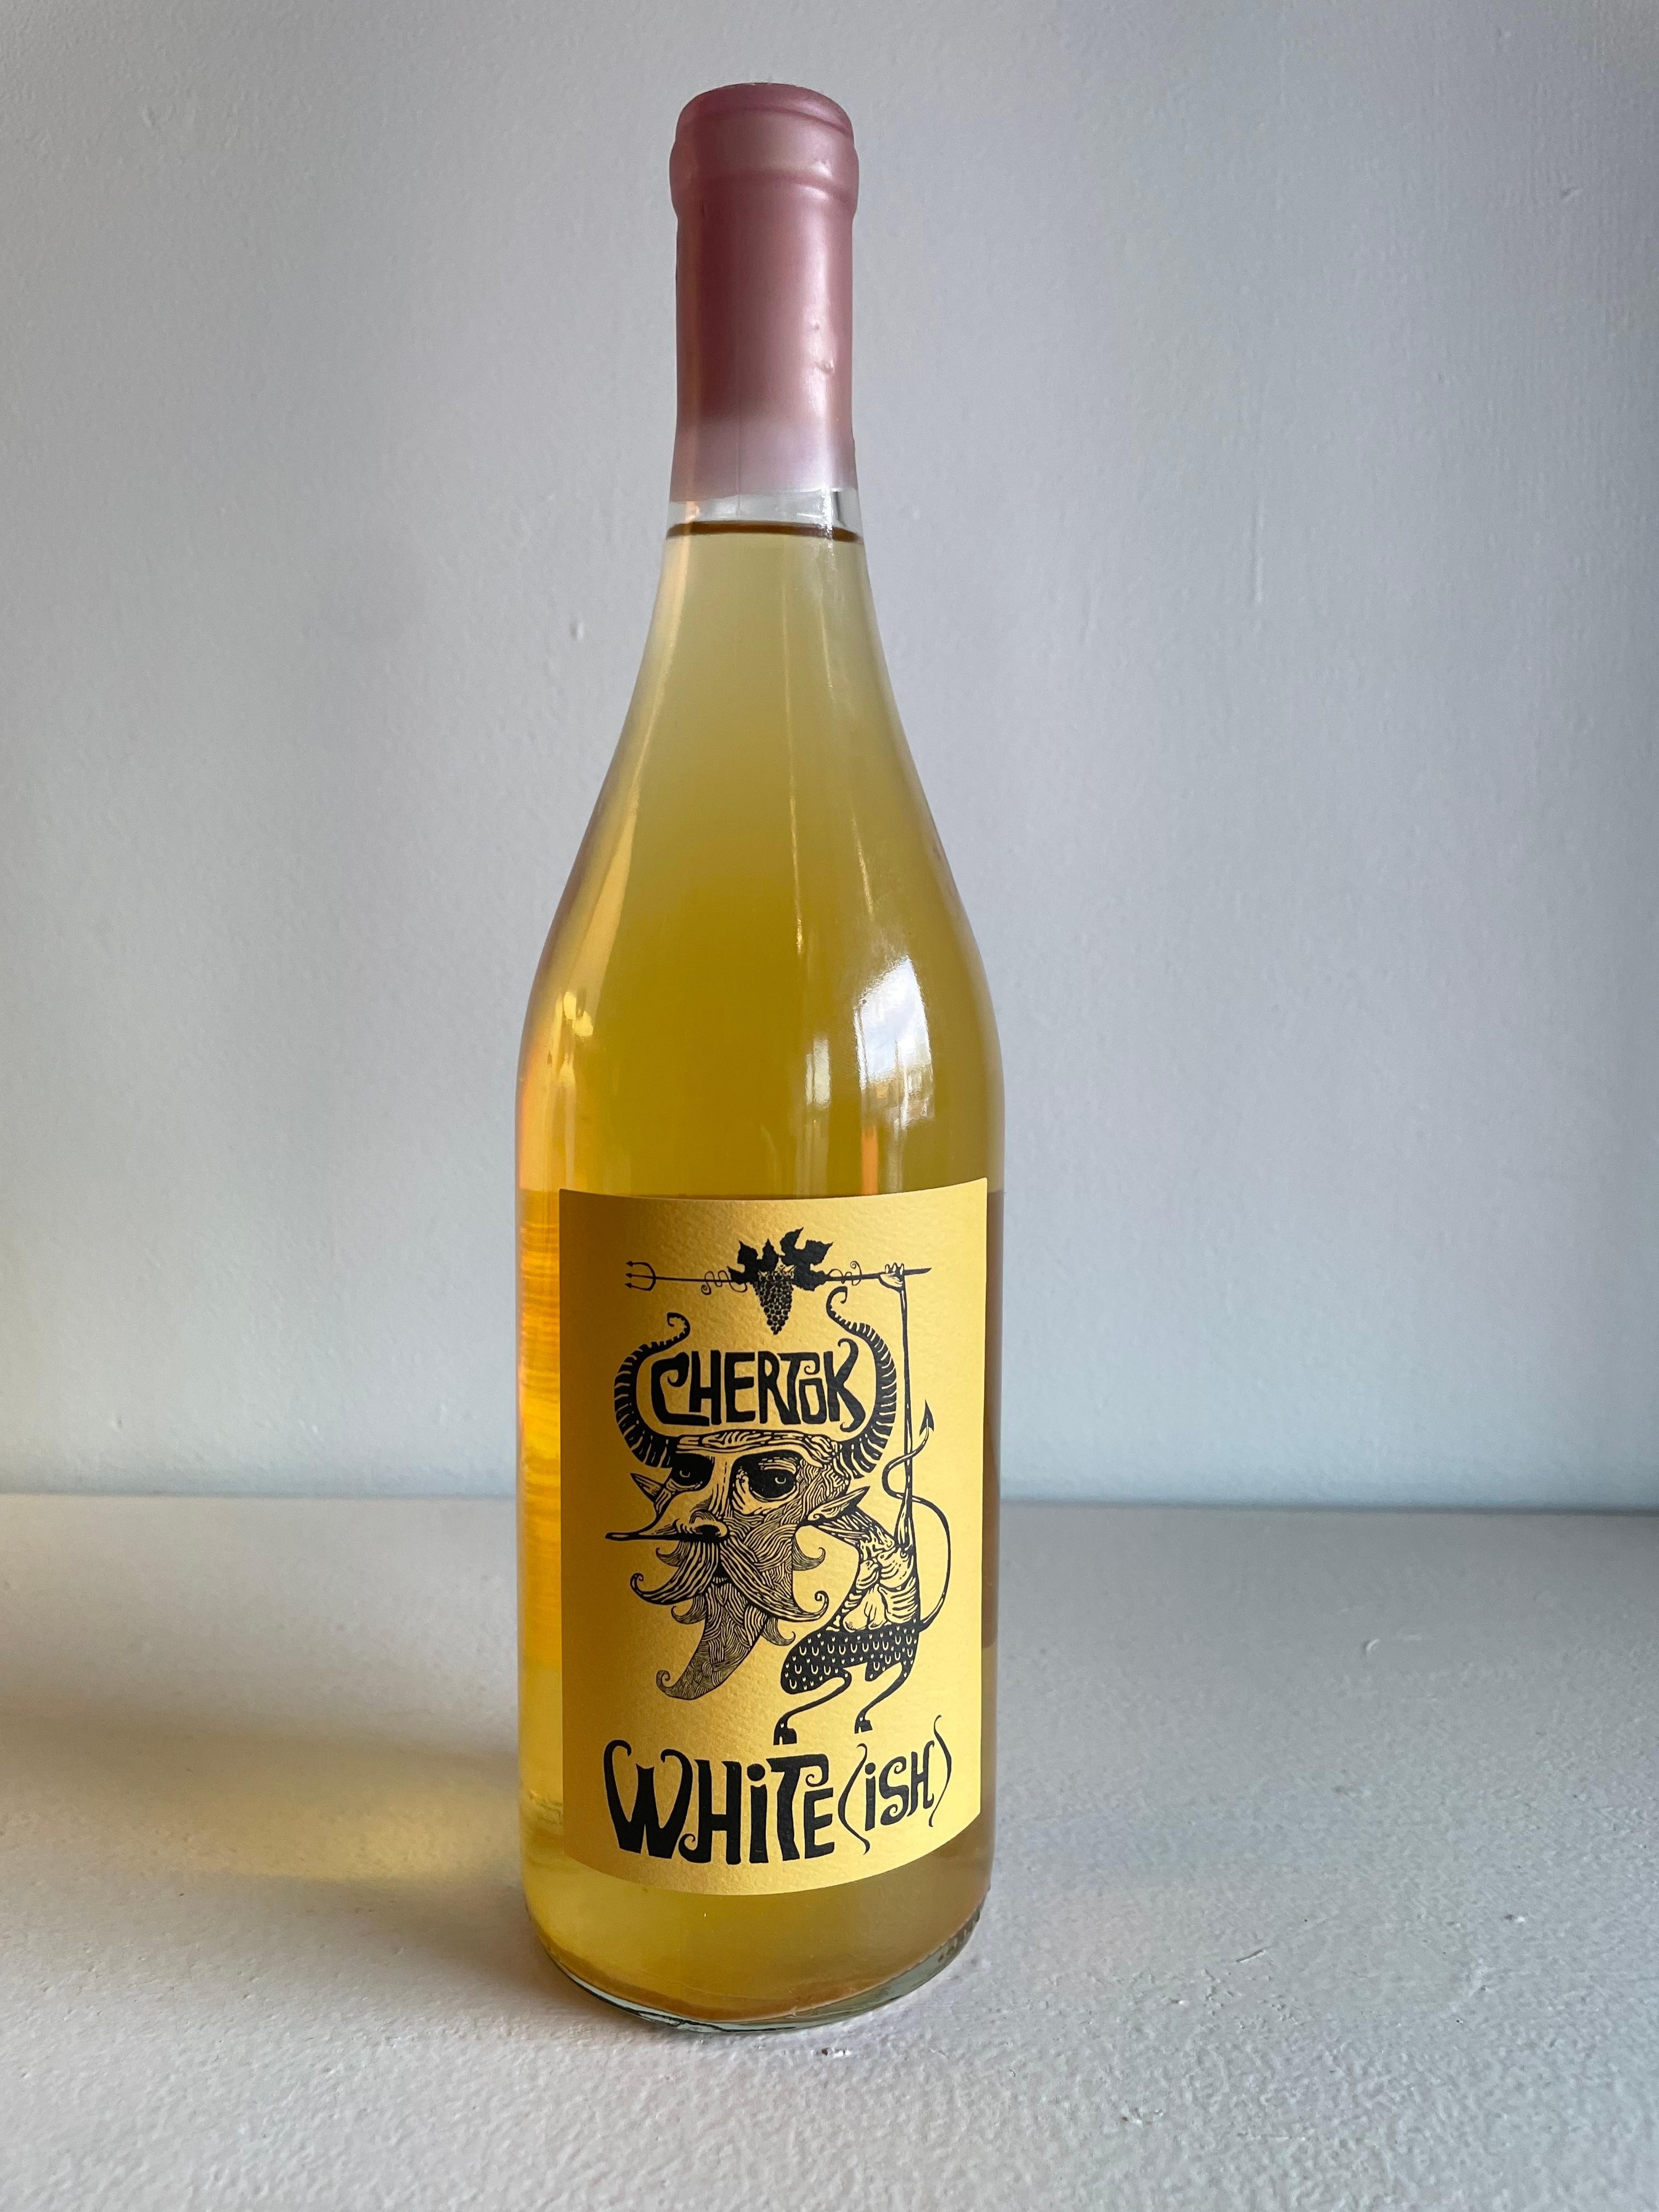 2022 "White(ish), Chertok Wines, VT